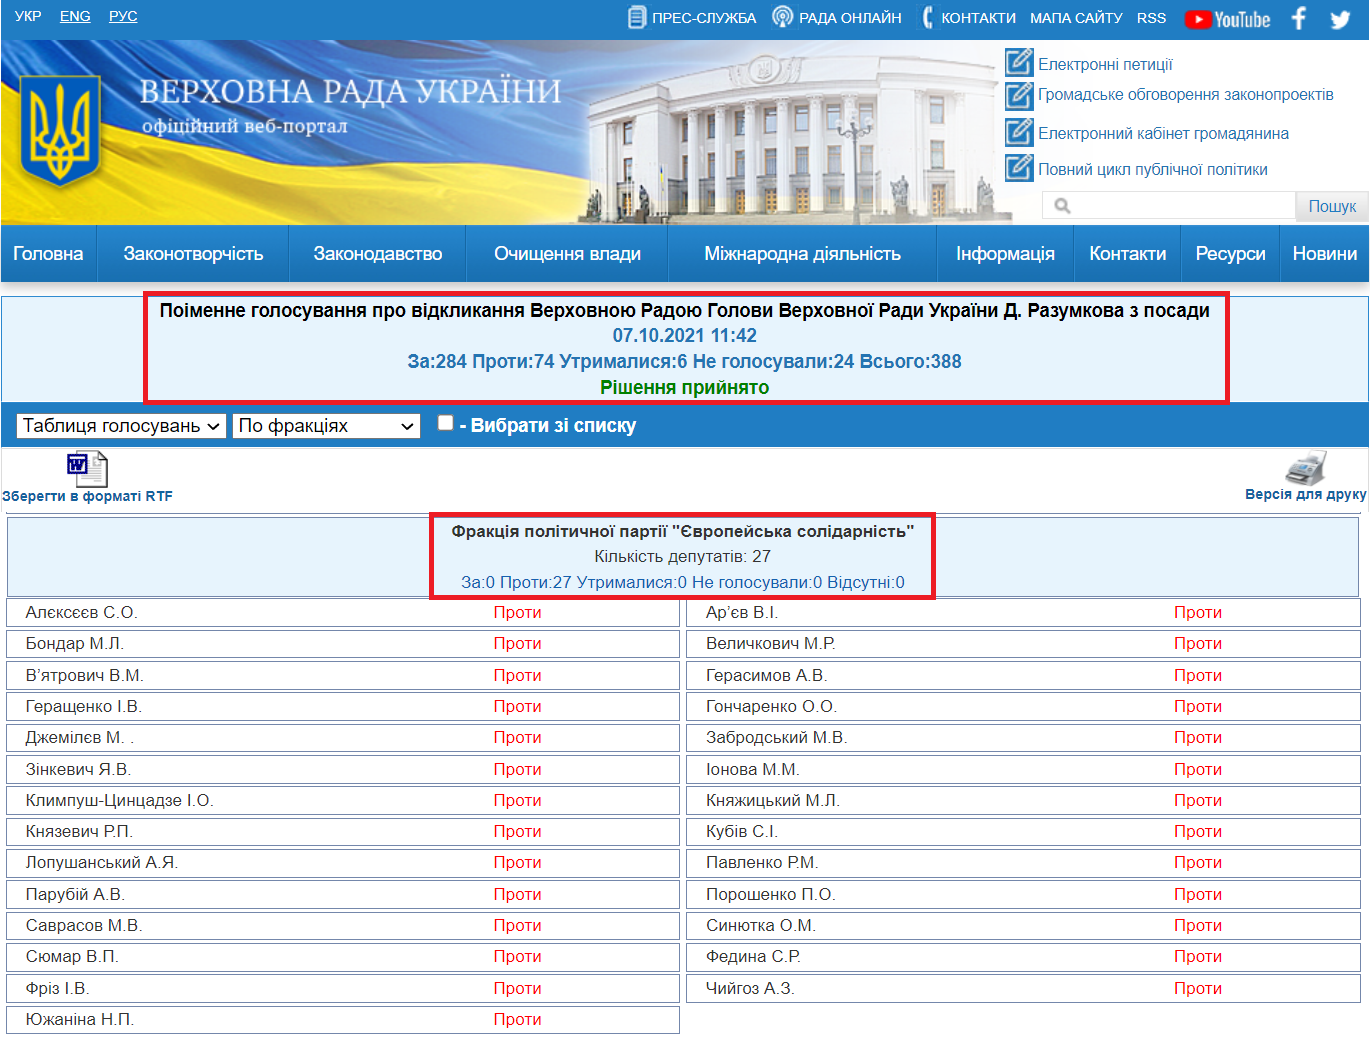 http://w1.c1.rada.gov.ua/pls/radan_gs09/ns_golos?g_id=15758